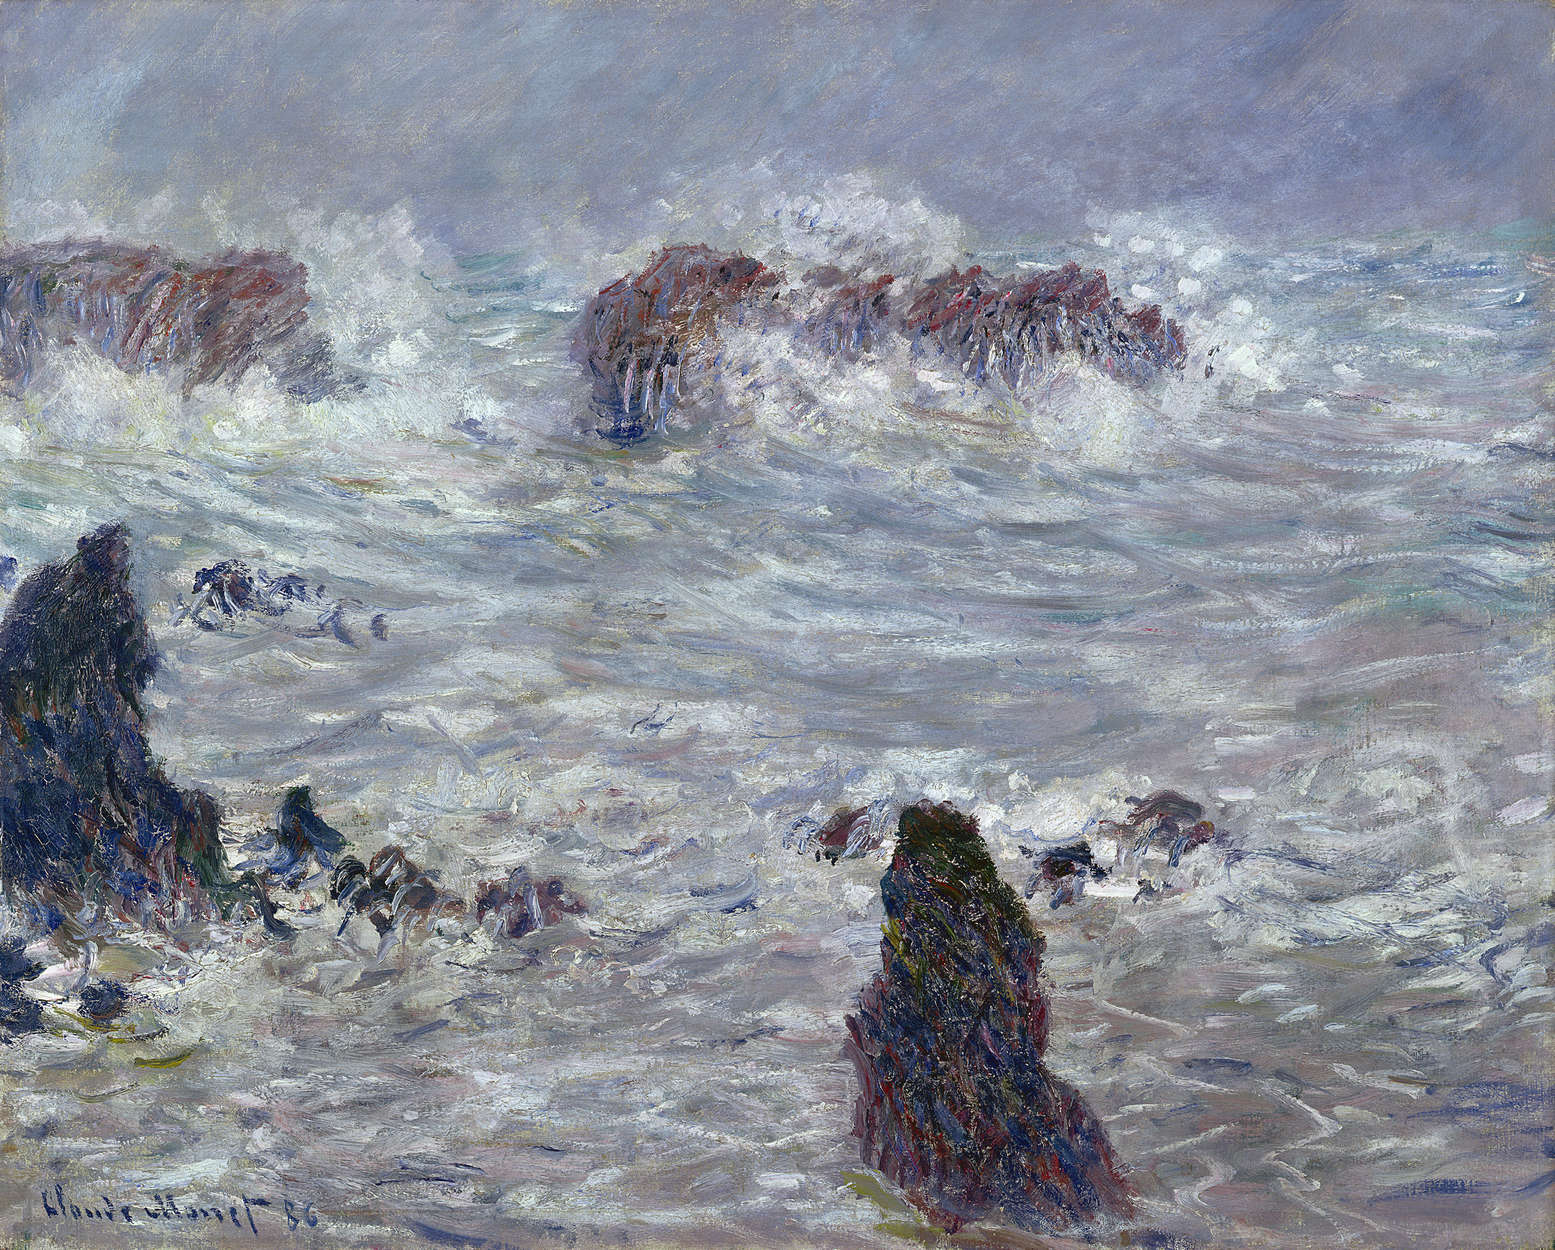             Muurschildering "Storm voor de kust" van Claude Monet
        